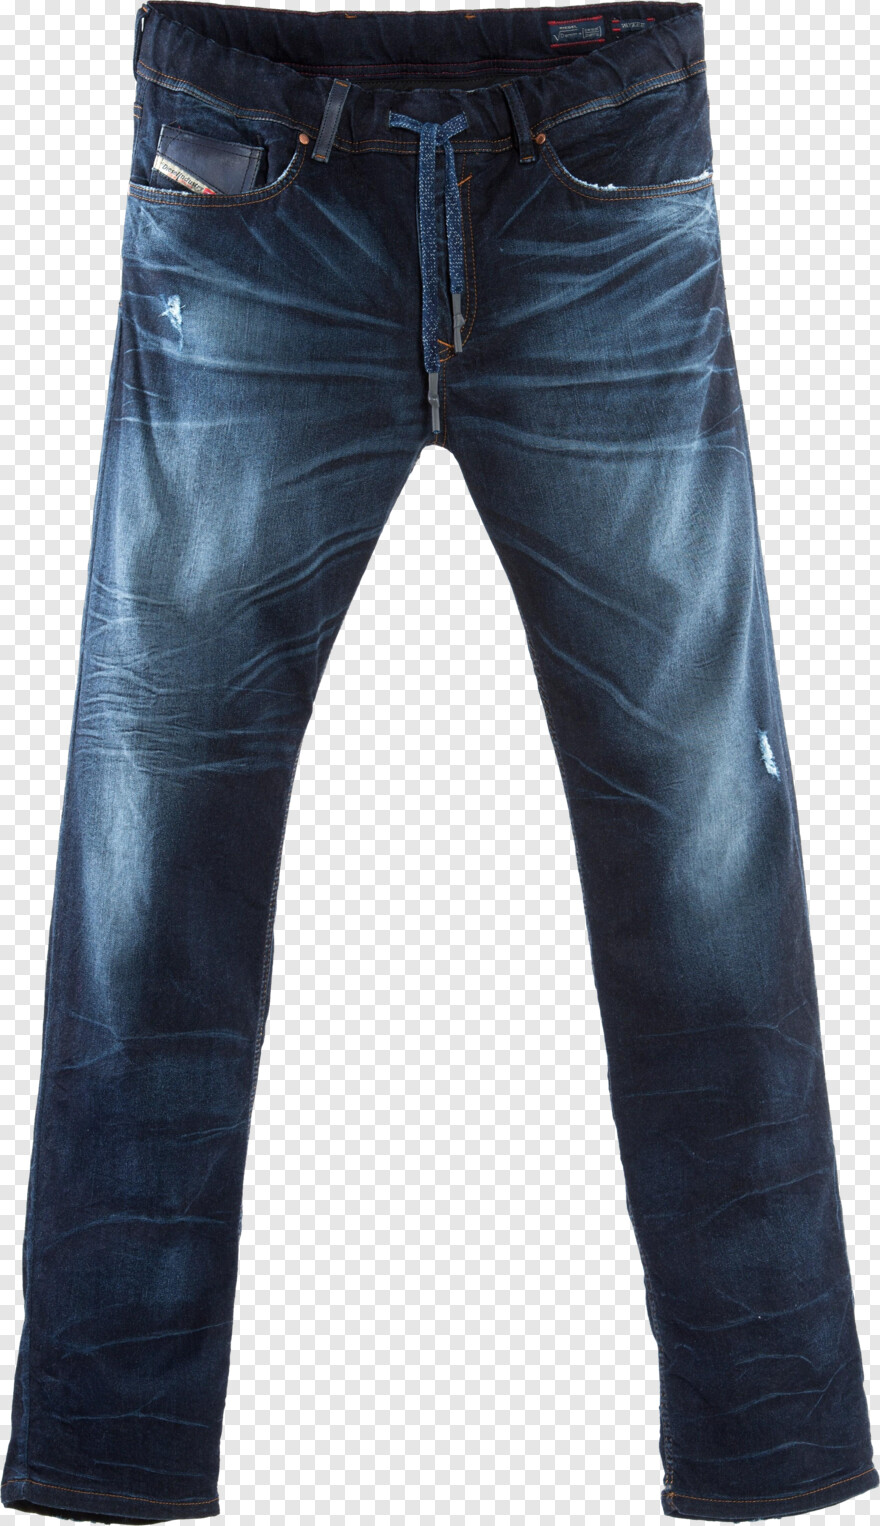 jeans-pant # 738712